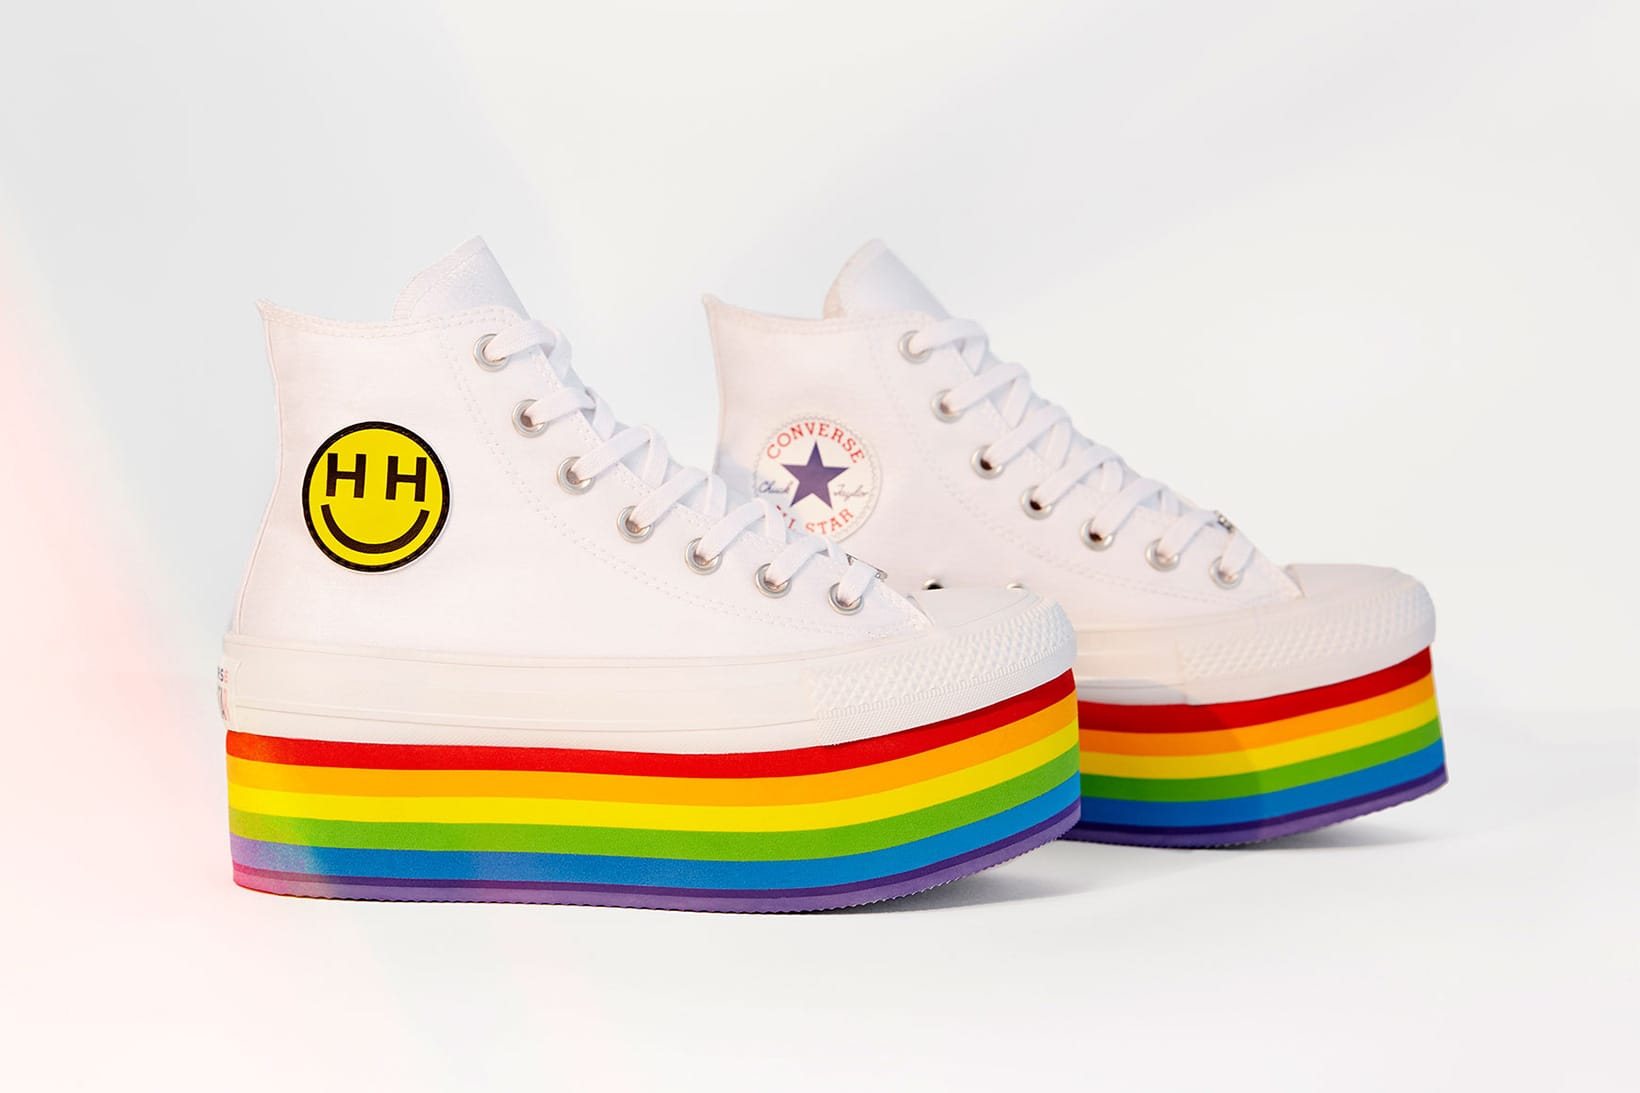 Miley Cyrus x Converse Pride Collection 